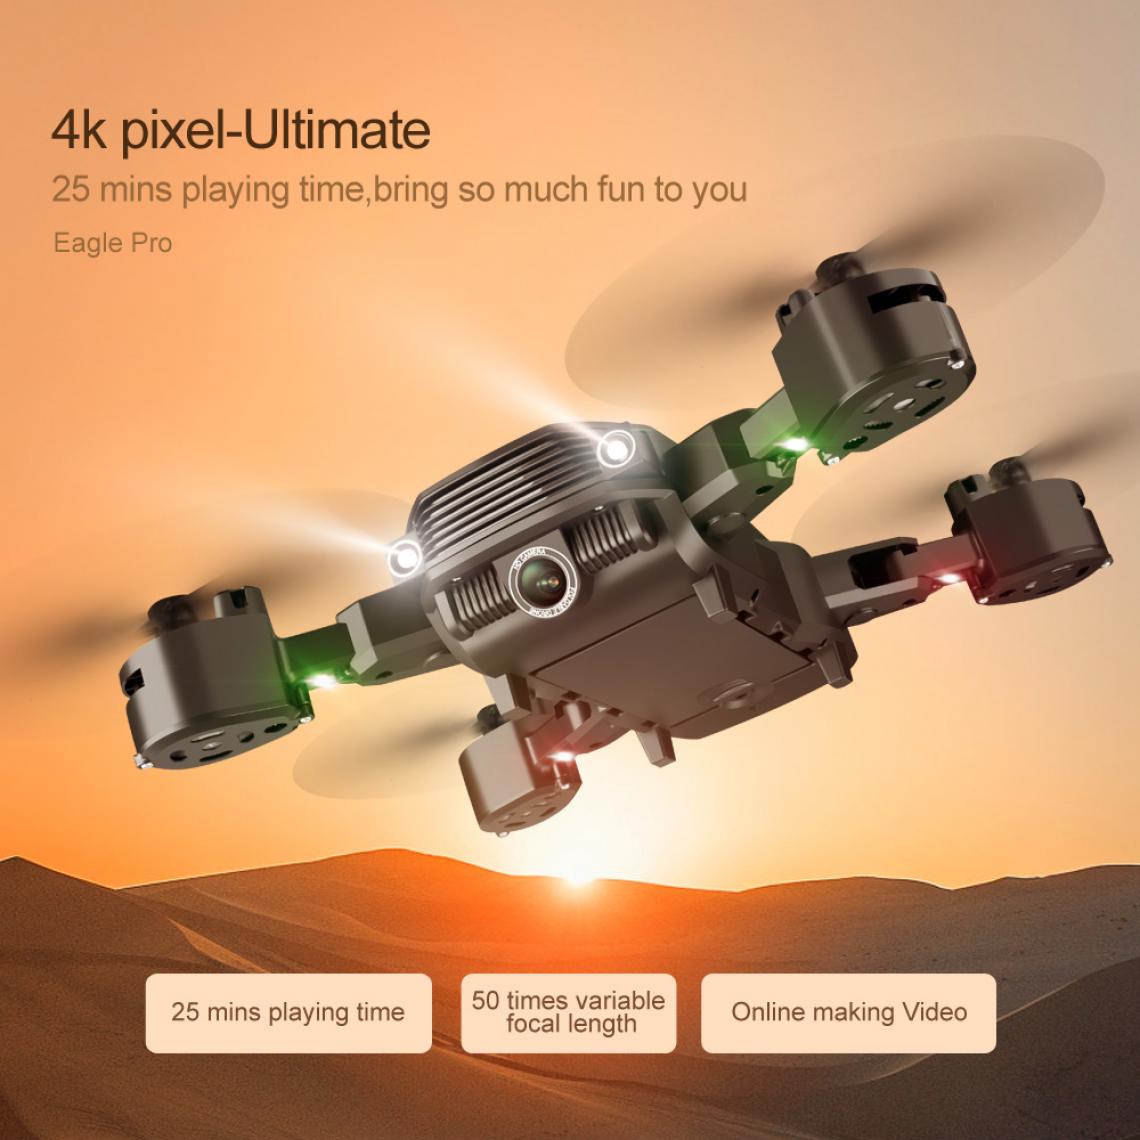 Universal - LS11 RC drone 4K avec caméra HD 1080P mini pliable parasite FPV WiFi drone professionnel quadcopter mode de tenue double caméra enfant jouet | RC Helicopter(Le noir) - Drone